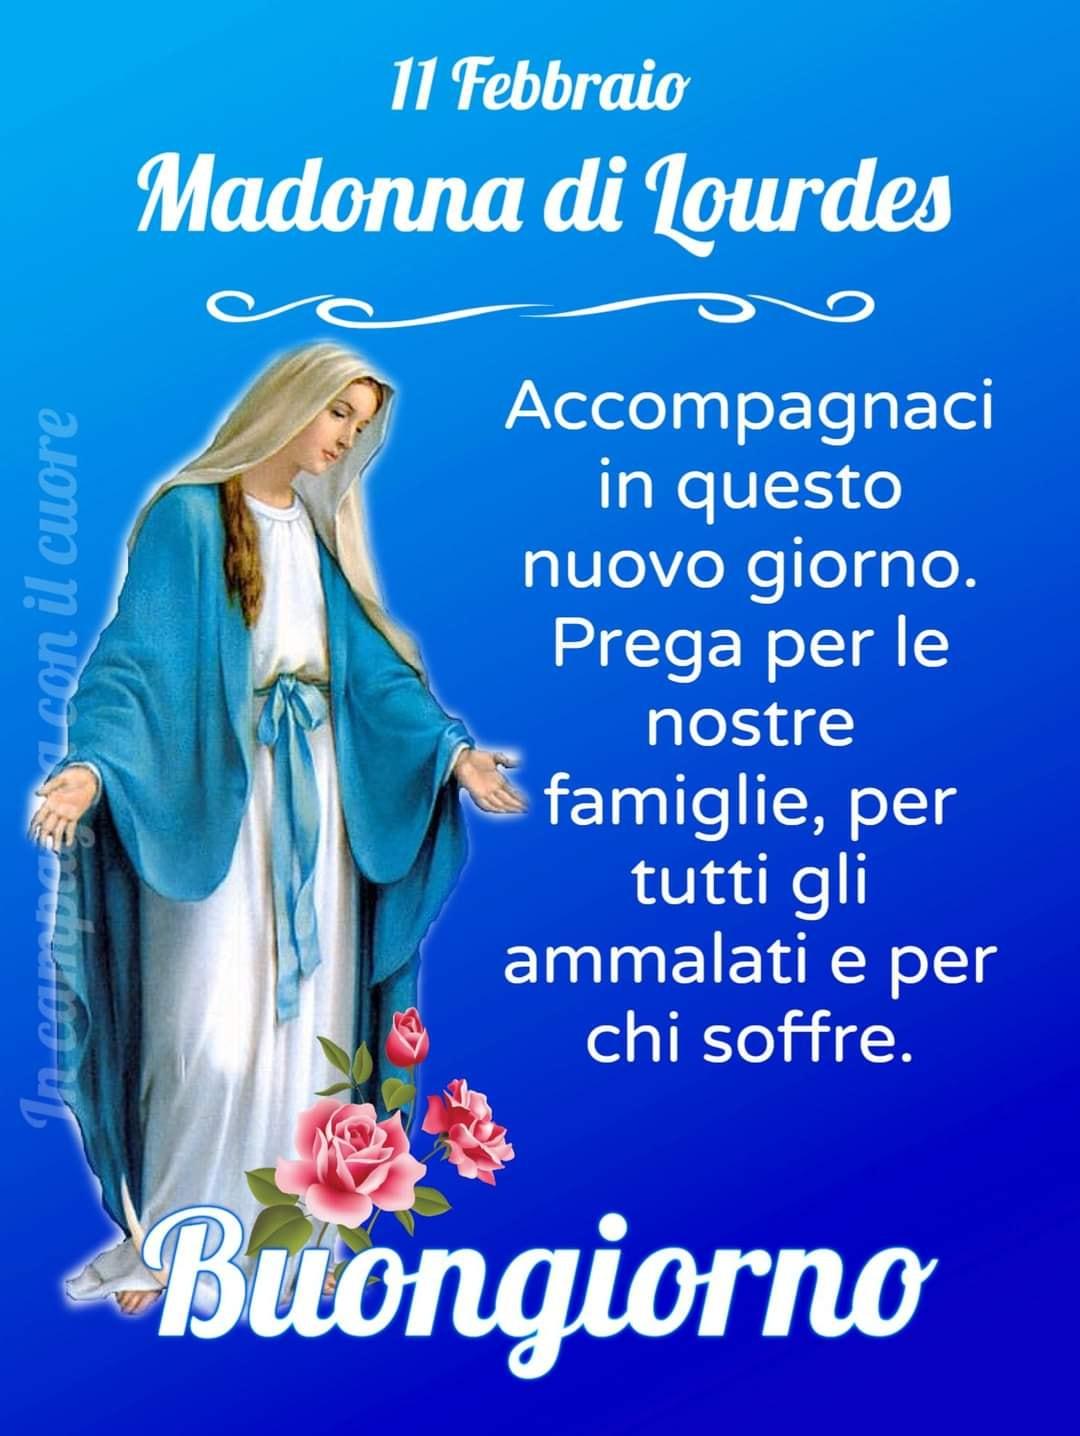 11 Febbraio, Madonna di Lourdes...